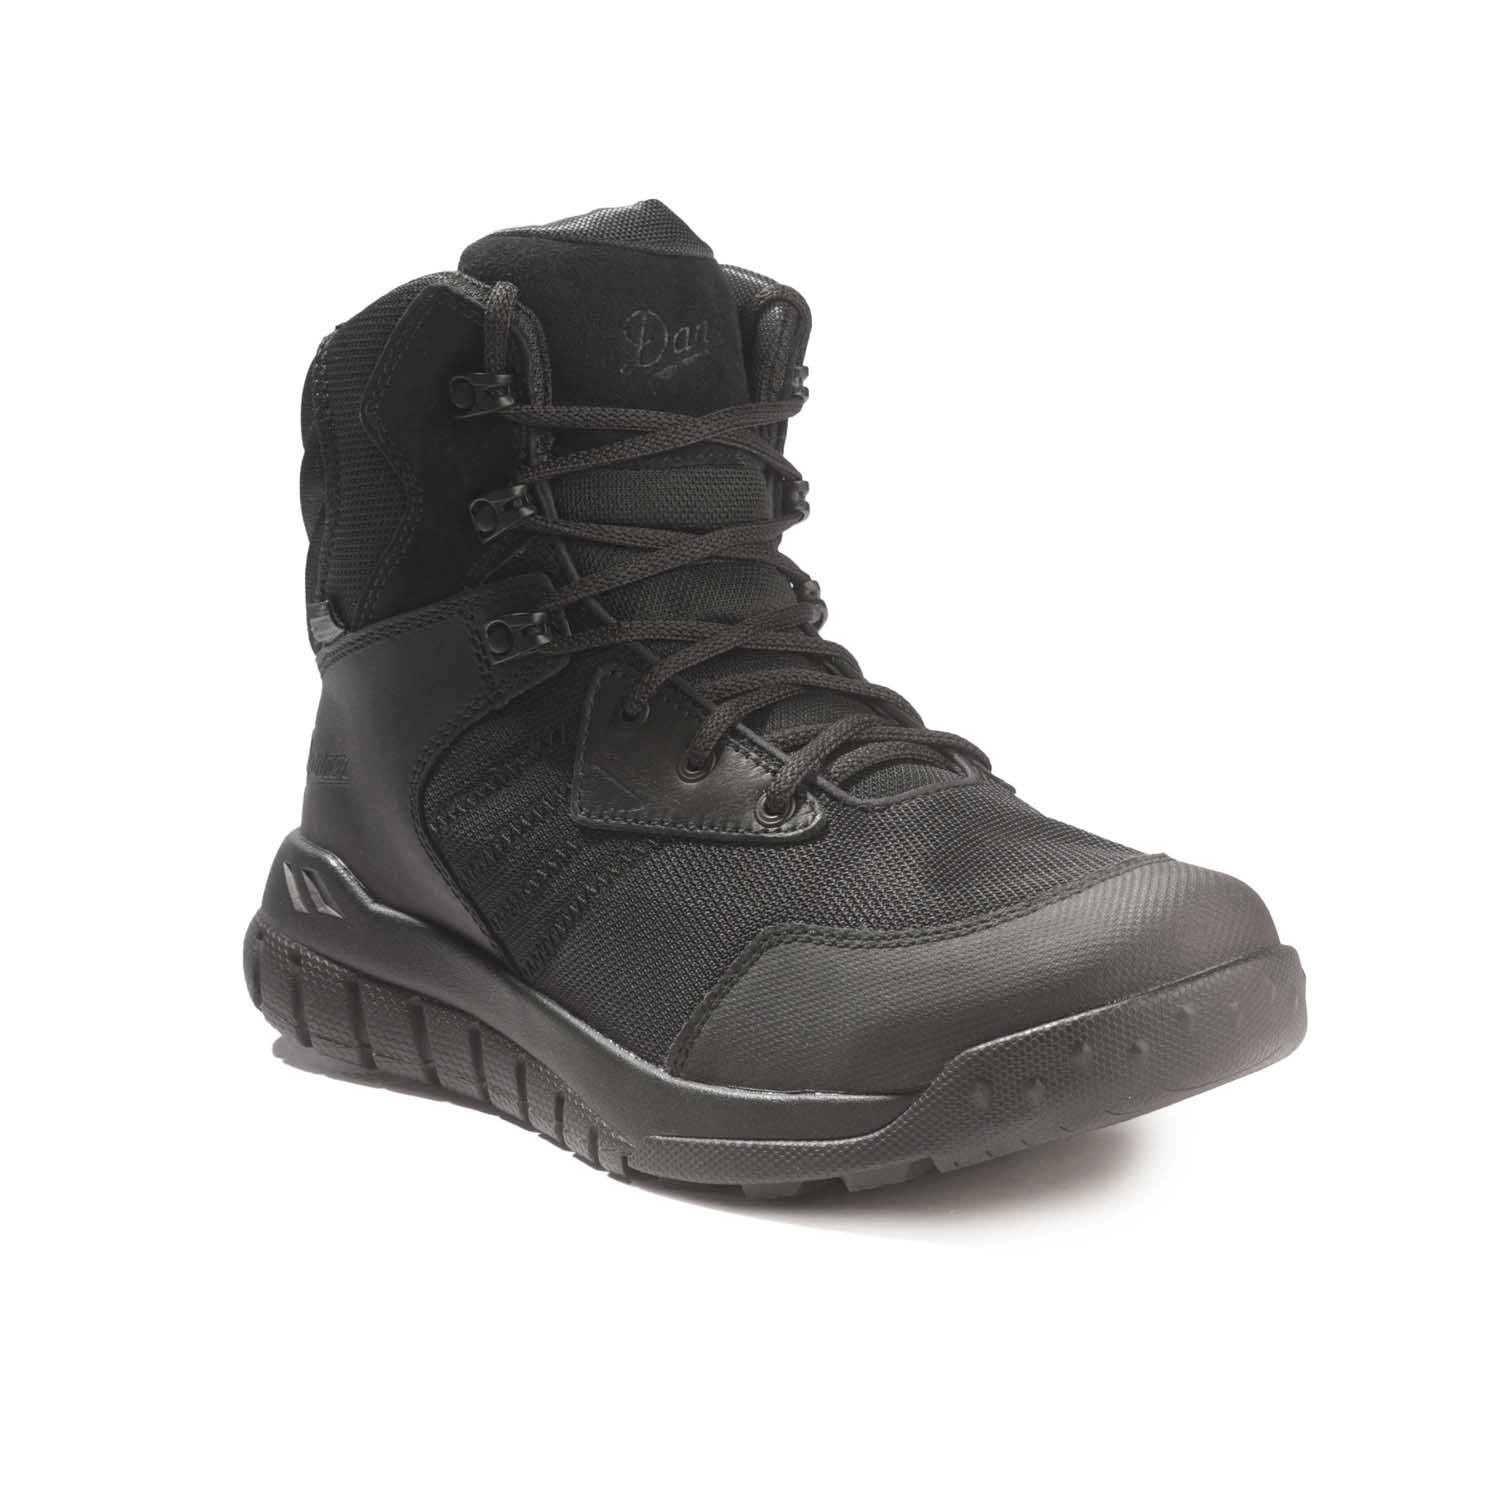 Danner 6" Instinct Tactical Side-Zip Boots w/ Danner Dry